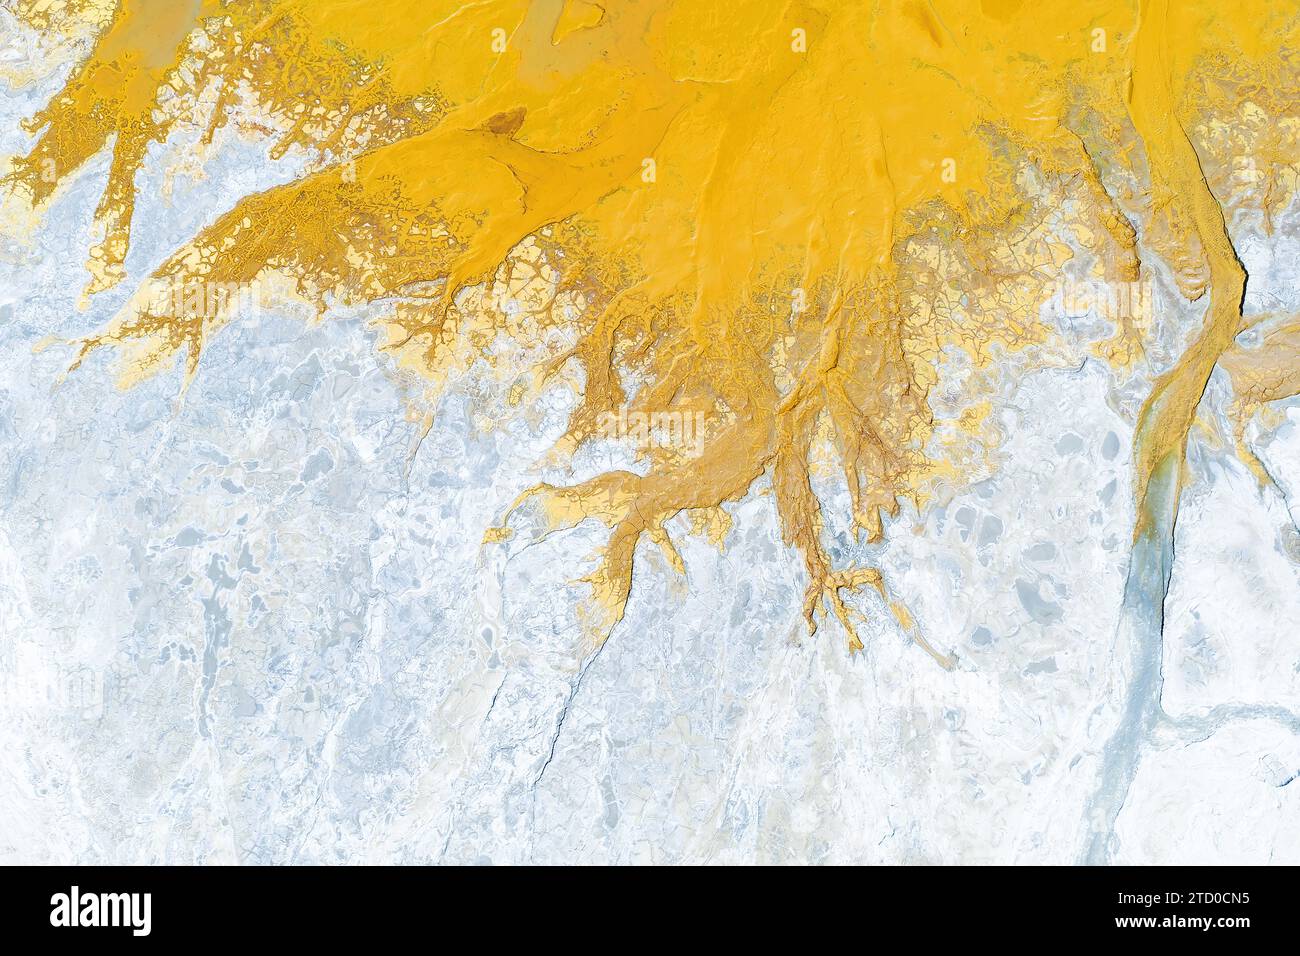 Il colpo aereo astratto cattura le vivaci sfumature di giallo e bianco delle acque ricche di minerali di Rio Tinto a Huelva, Spagna. Foto Stock